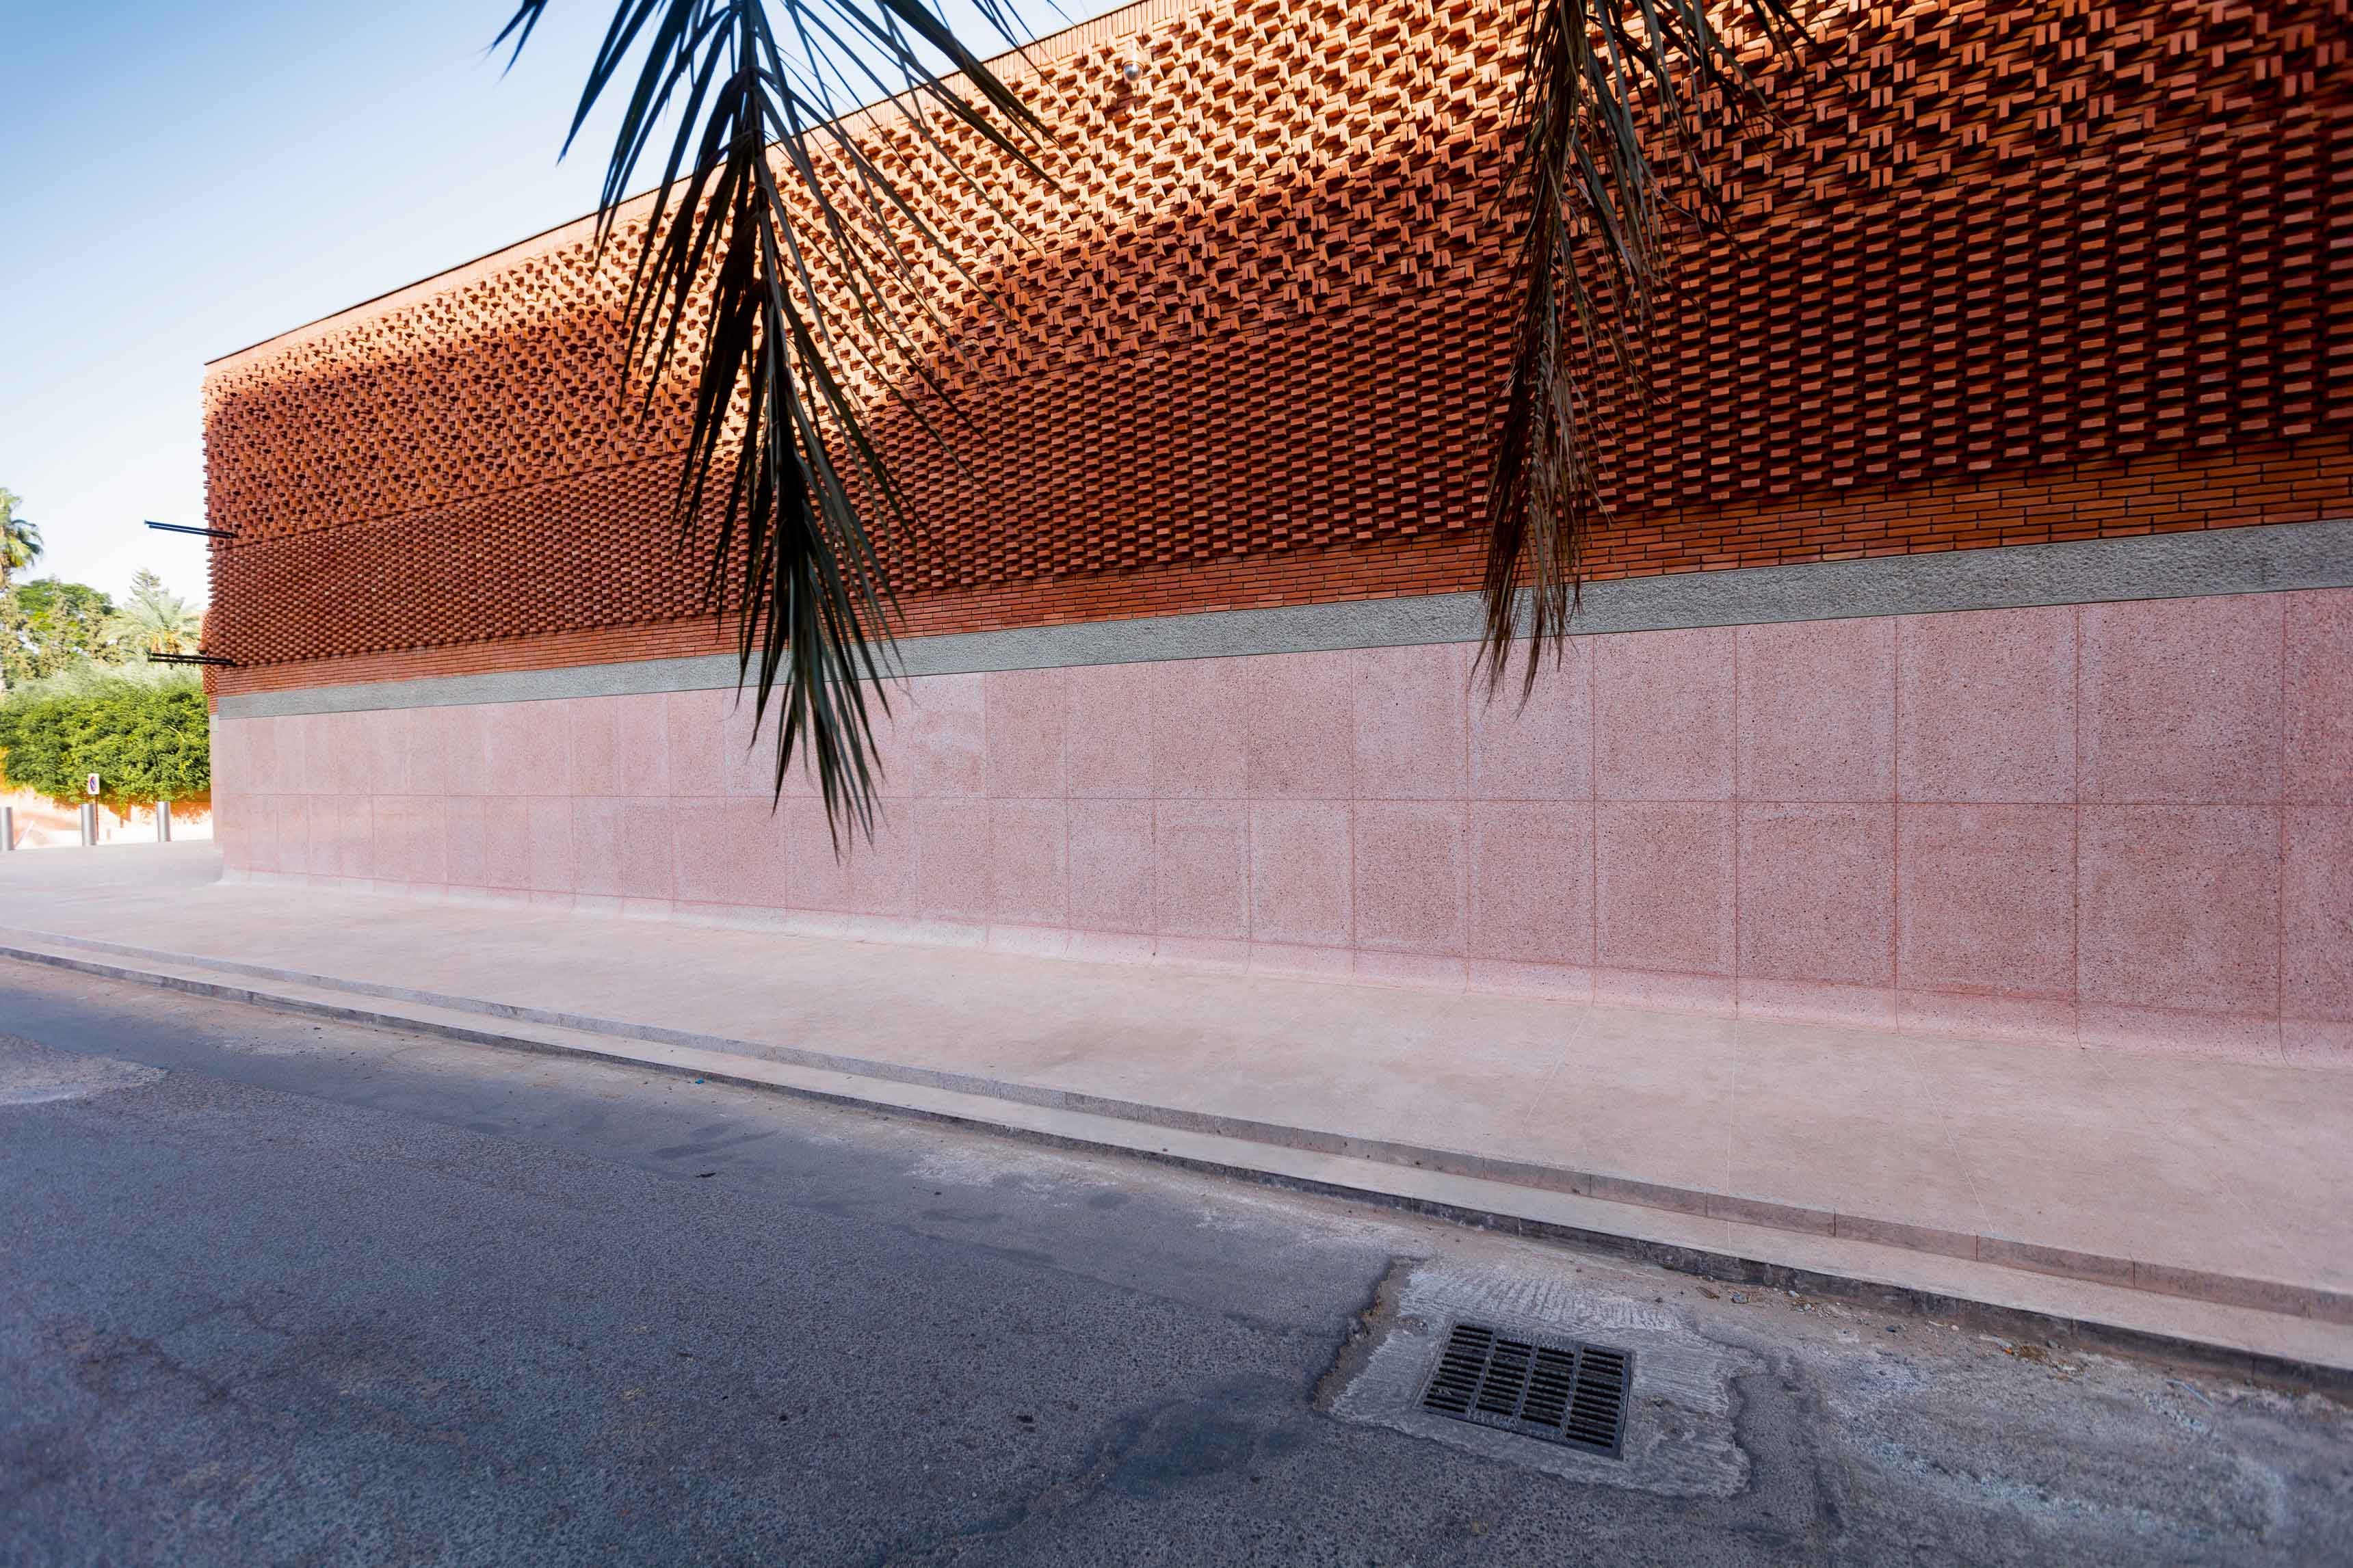 Qui sont les architectes derrière le palais Yves Saint Laurent à Marrakech ?